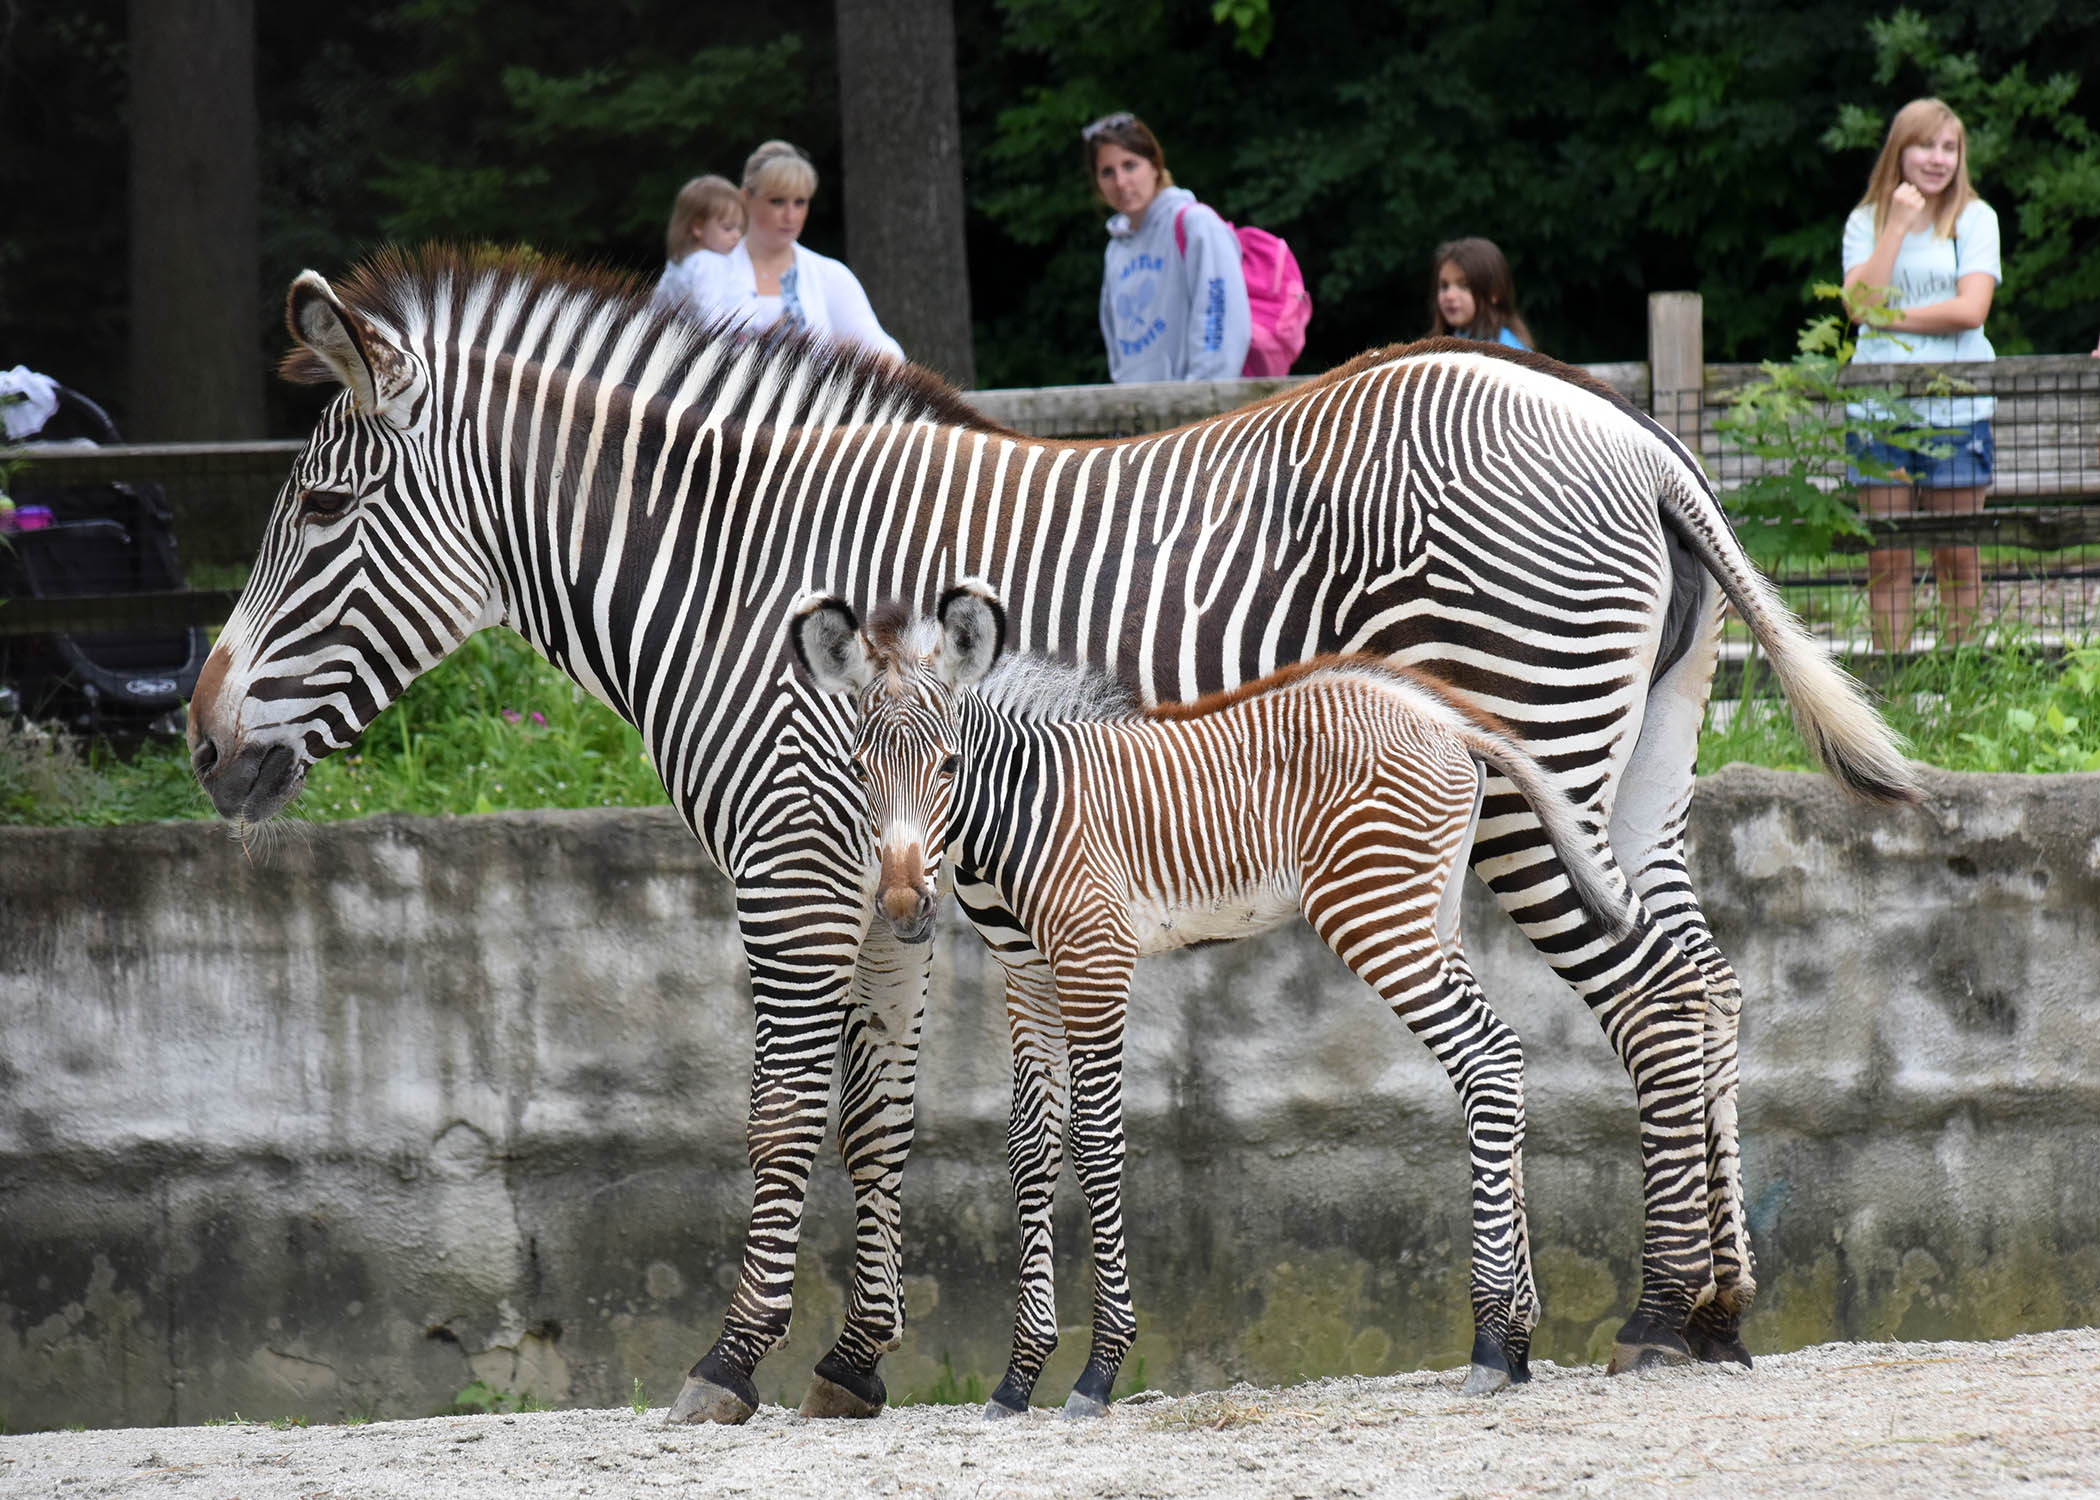 Zebras in havana photo